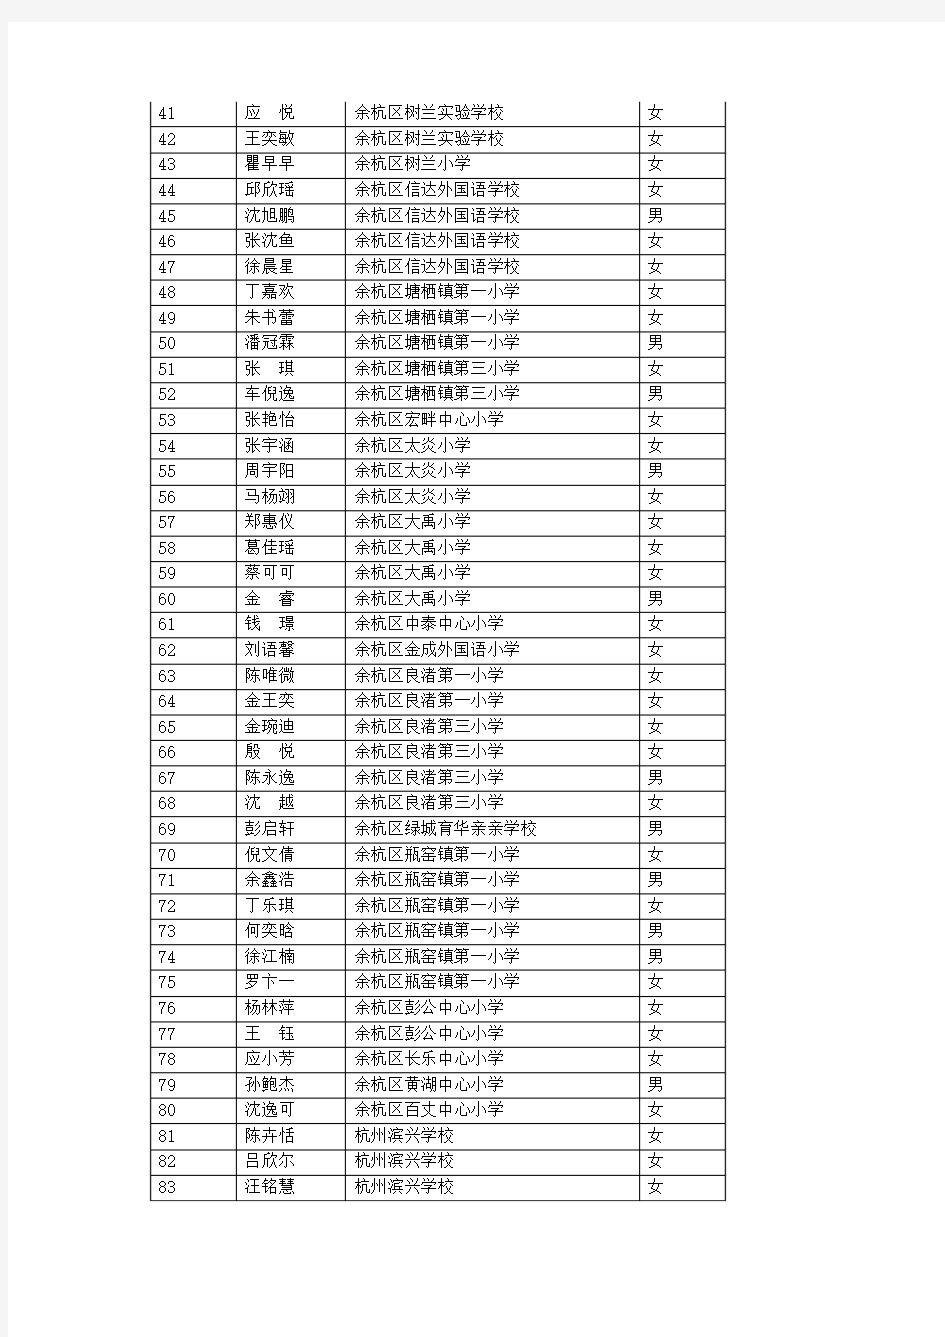 杭州市少先队第54期火炬金奖挑战营队员名单